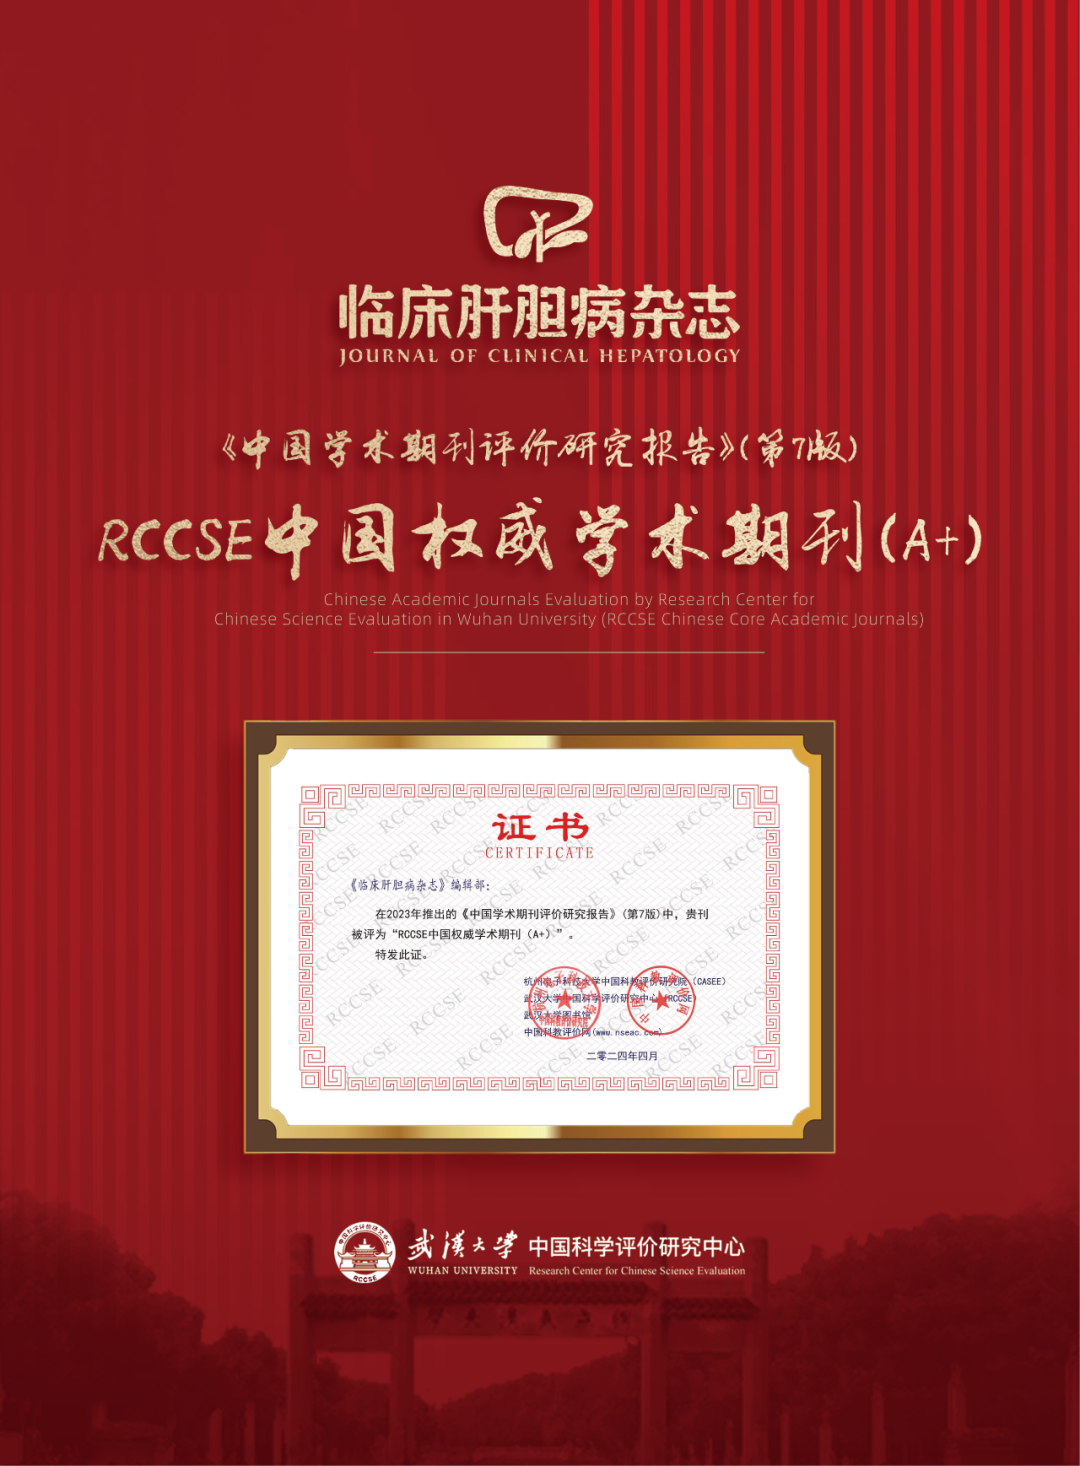 《临床肝胆<font color="red">病</font>杂志》获评“RCCSE中国权威学术期刊（A+）”